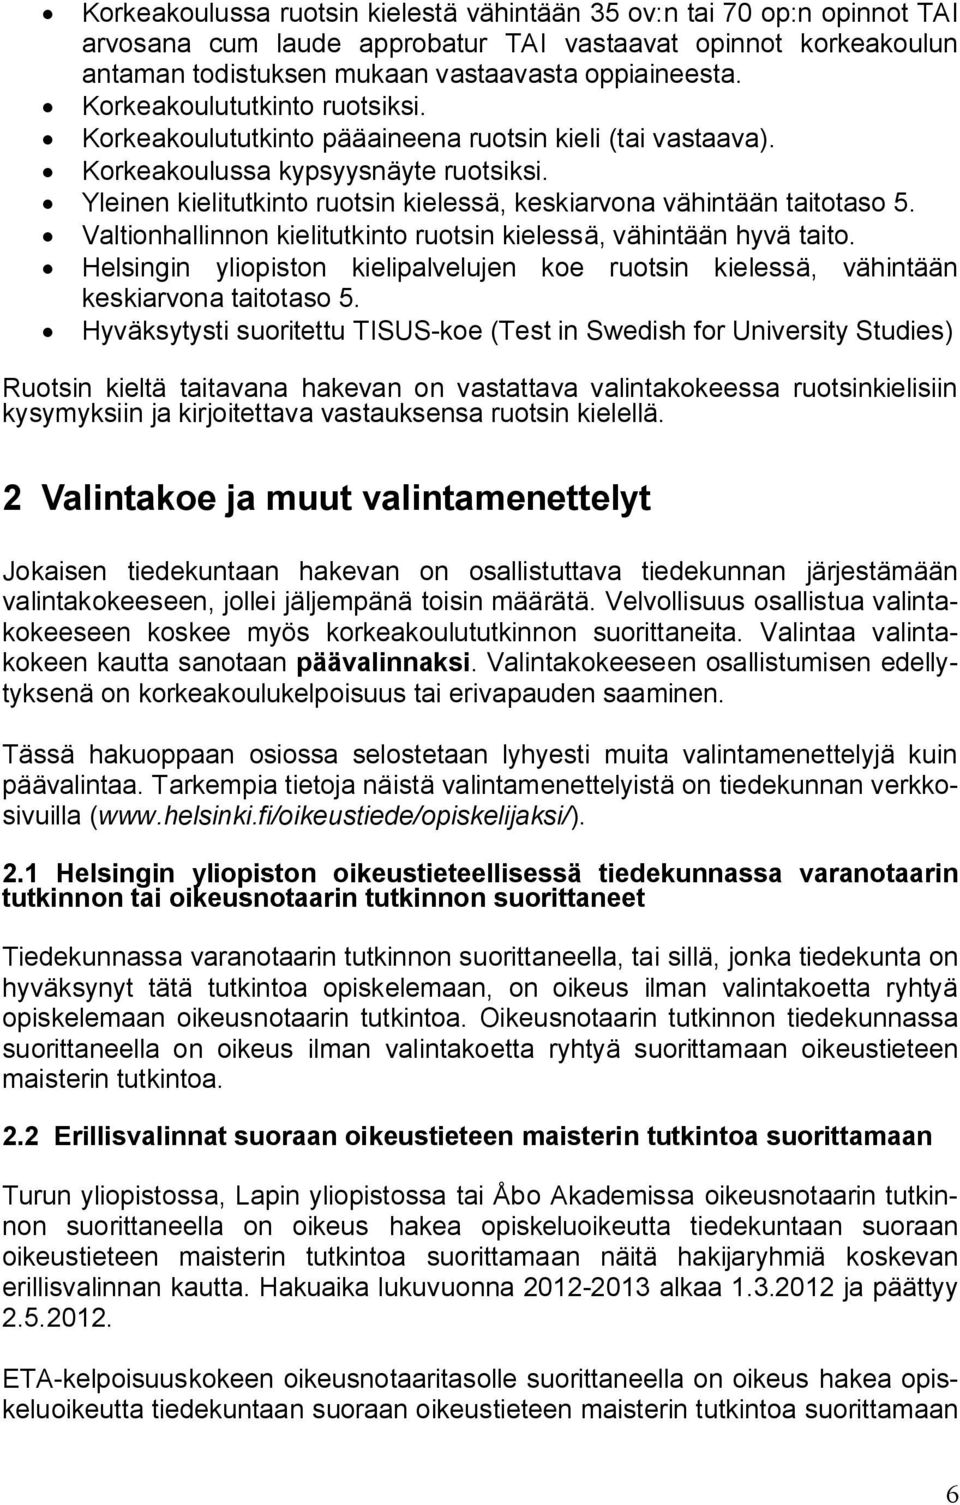 Yleinen kielitutkinto ruotsin kielessä, keskiarvona vähintään taitotaso 5. Valtionhallinnon kielitutkinto ruotsin kielessä, vähintään hyvä taito.